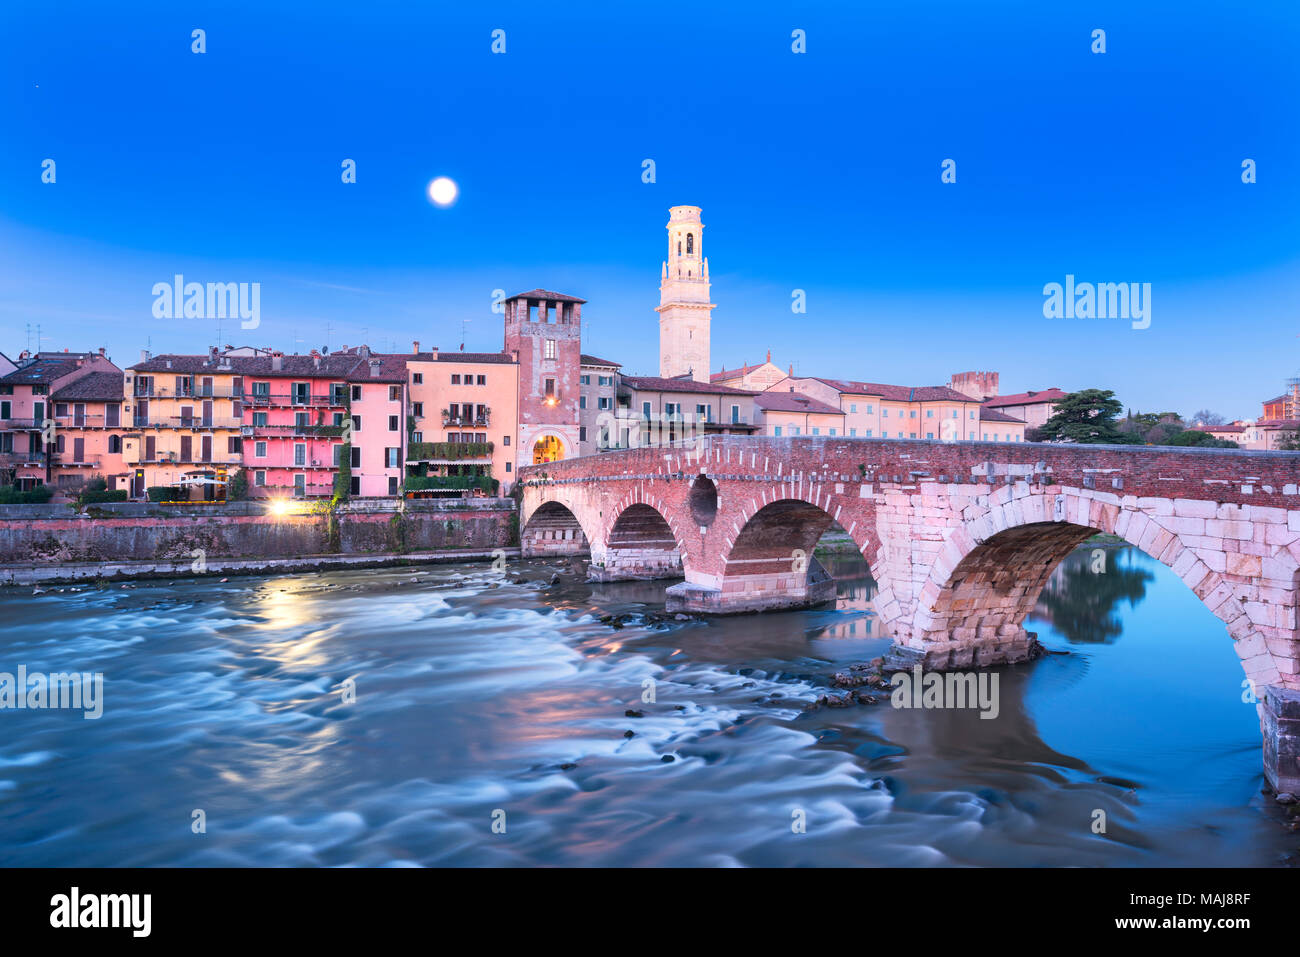 Pietra bridge on Verona city at dusk, Europe, Italy, Veneto, Verona Stock Photo